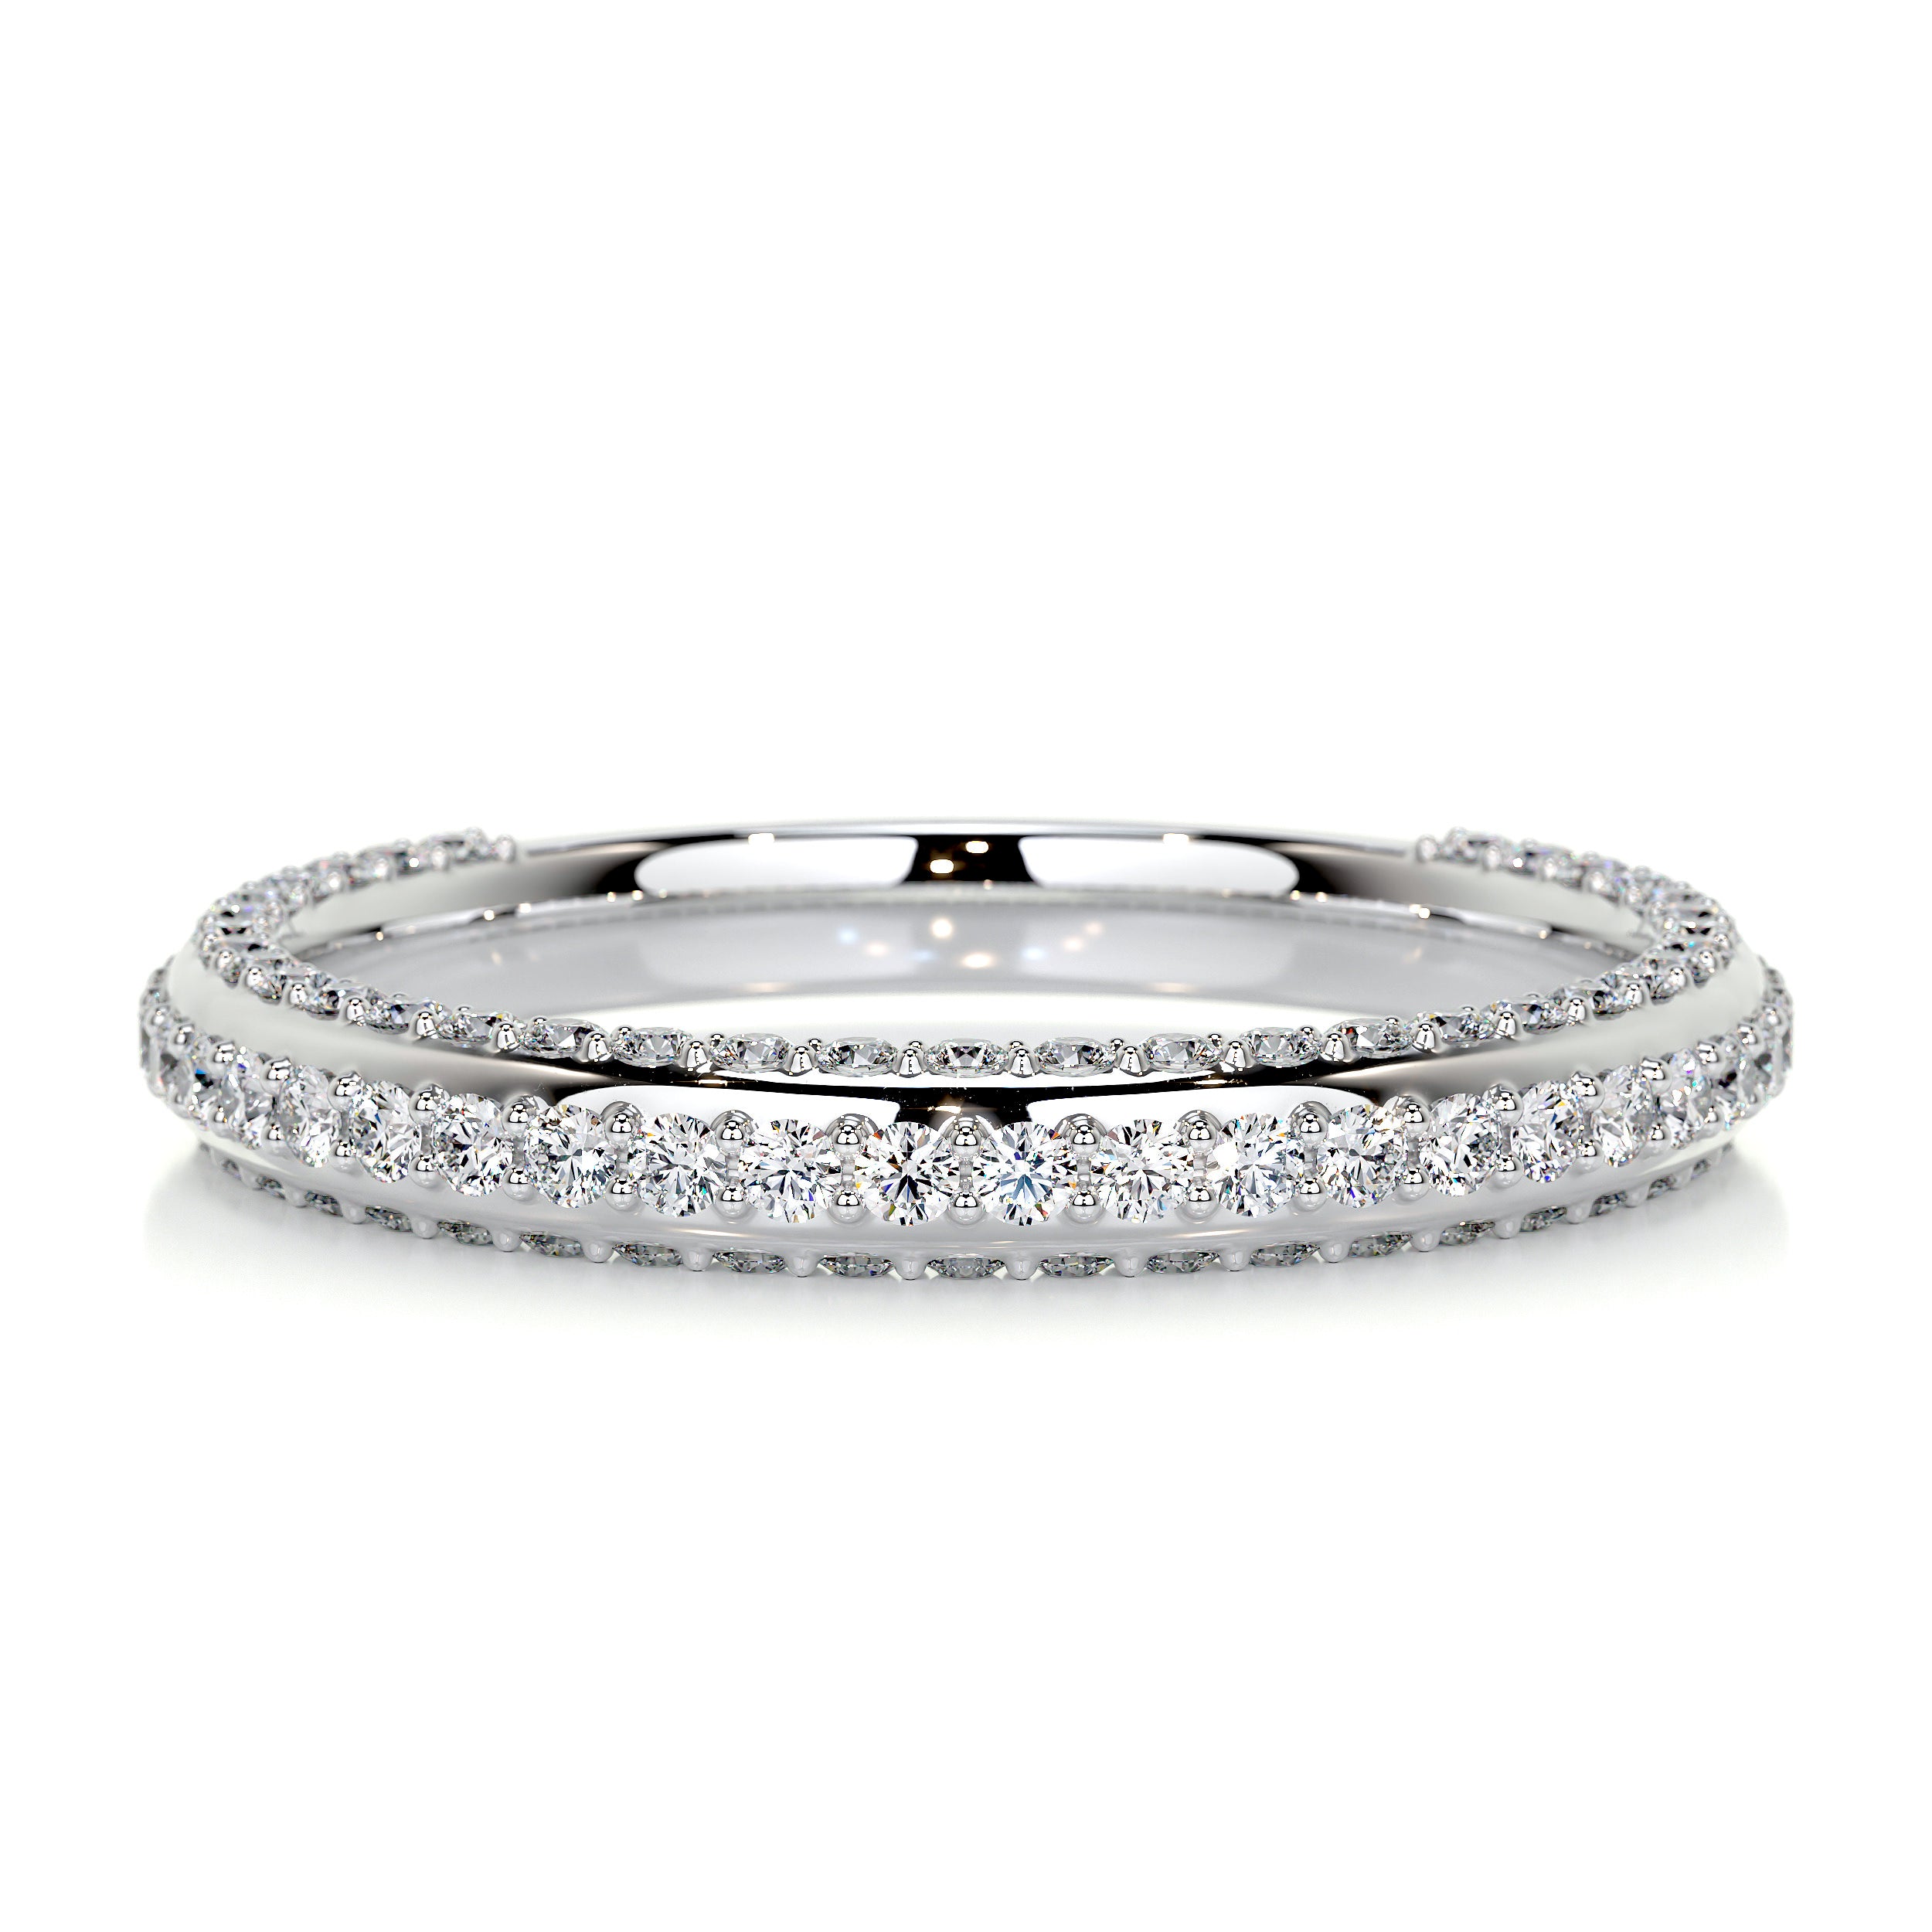 Anastasia Diamond Wedding Ring   (0.75 Carat) -14K White Gold